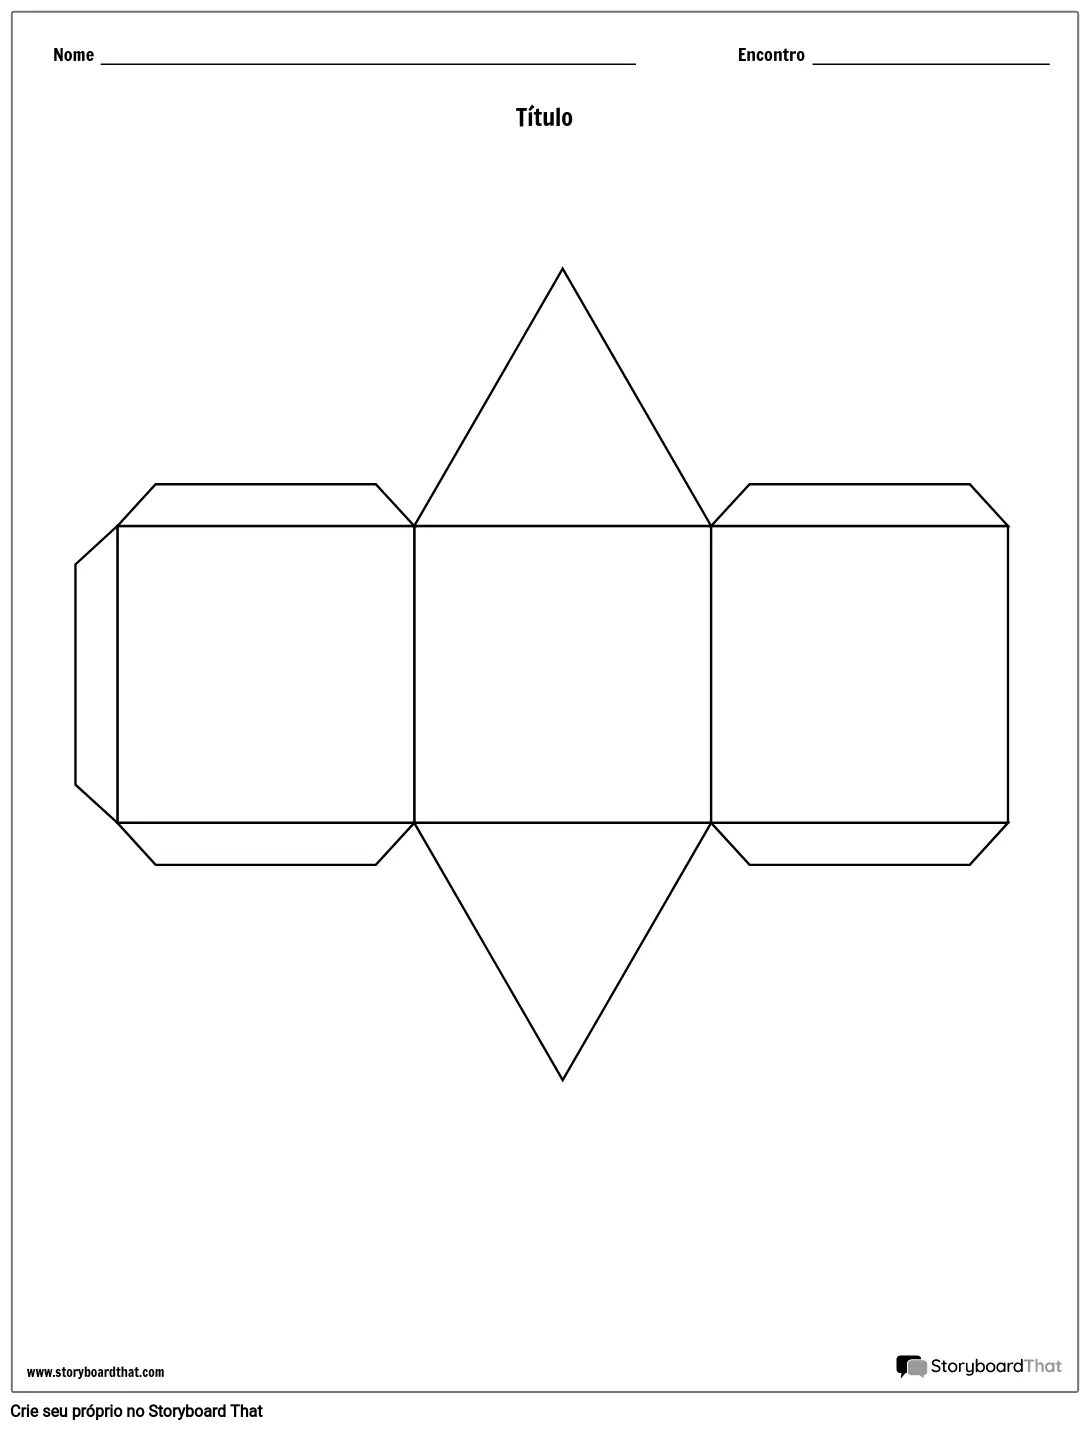 Modelo de Cubo de História de Prisma Triangular